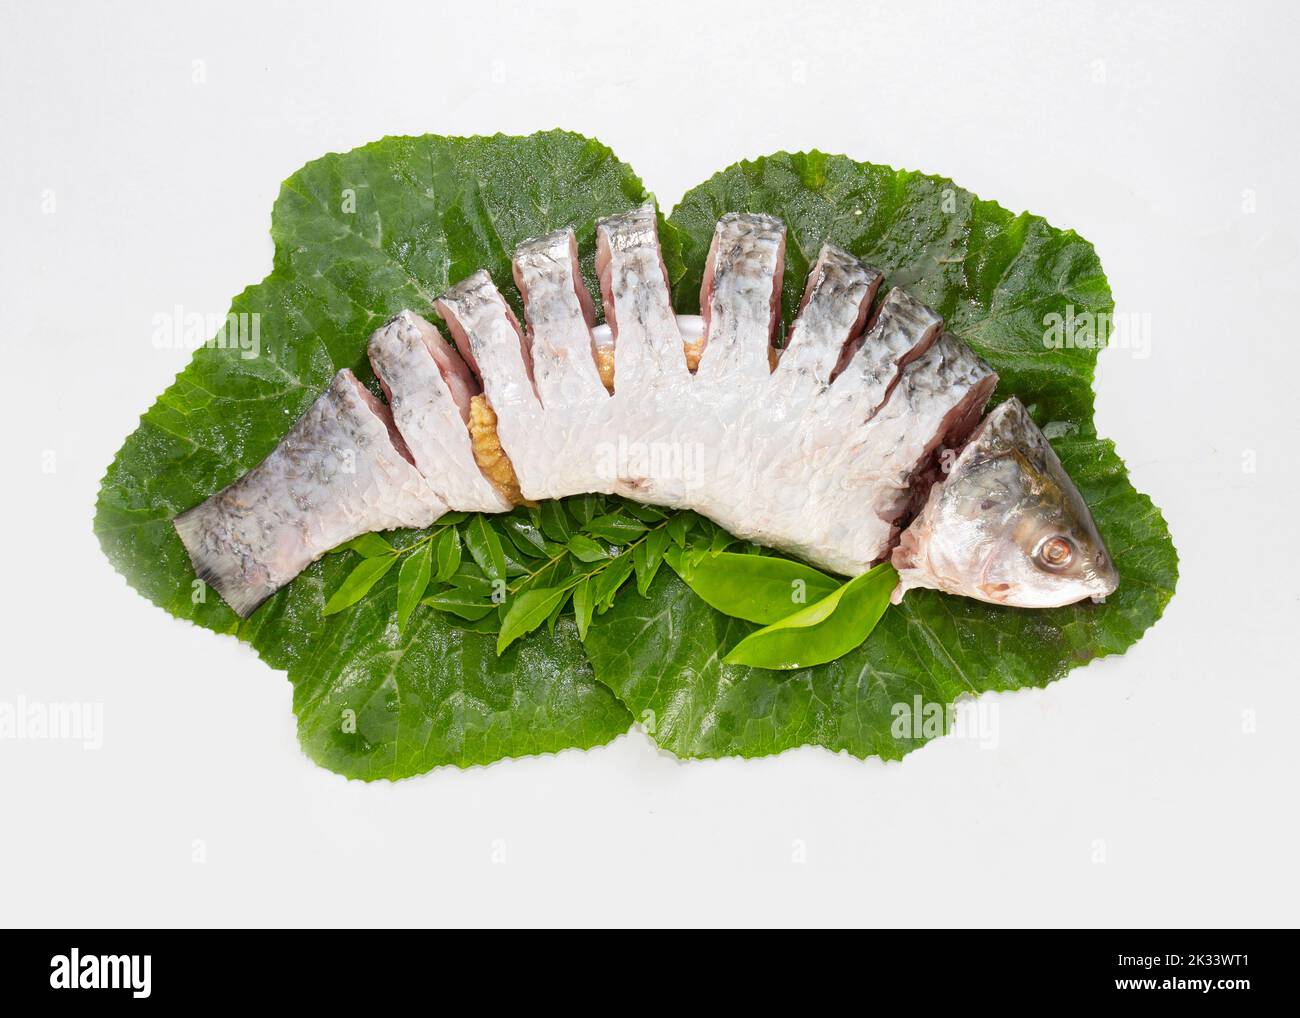 Der Rohu, rui oder Roho labeo ist eine Fischart der Karpfenfamilie, die in Flüssen in Südasien gefunden wird. Fischmarkt-Display. Roh, ungekocht, in Scheiben geschnitten und zu Stockfoto